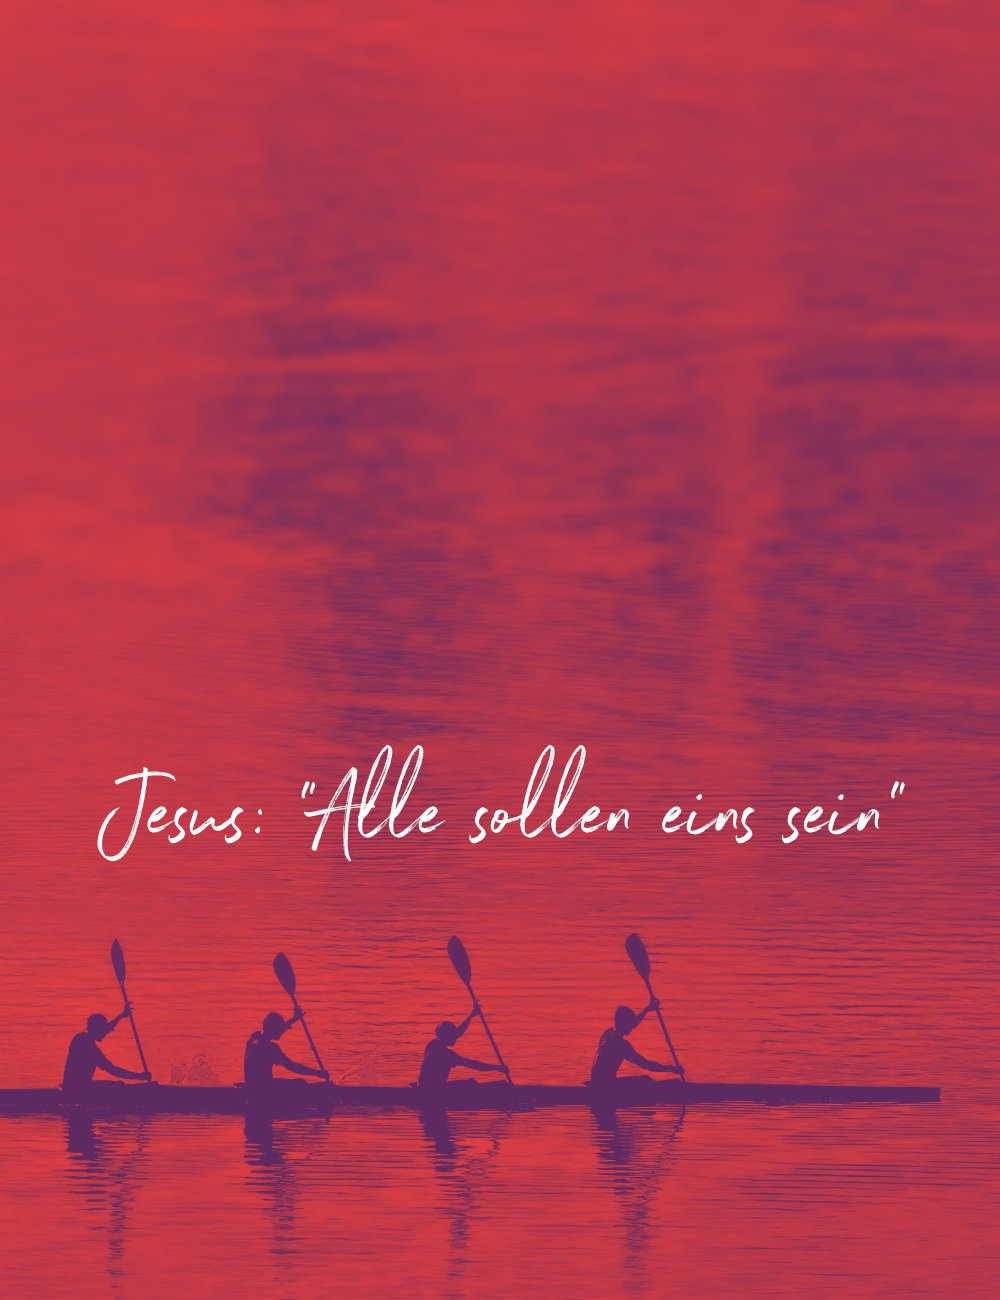 Bild für Thema Einheit: Vier Ruderer gemeinsam in einem Boot. Auf dem Bild steht die Schrift: Jesus: "Alle sollen eins sein"